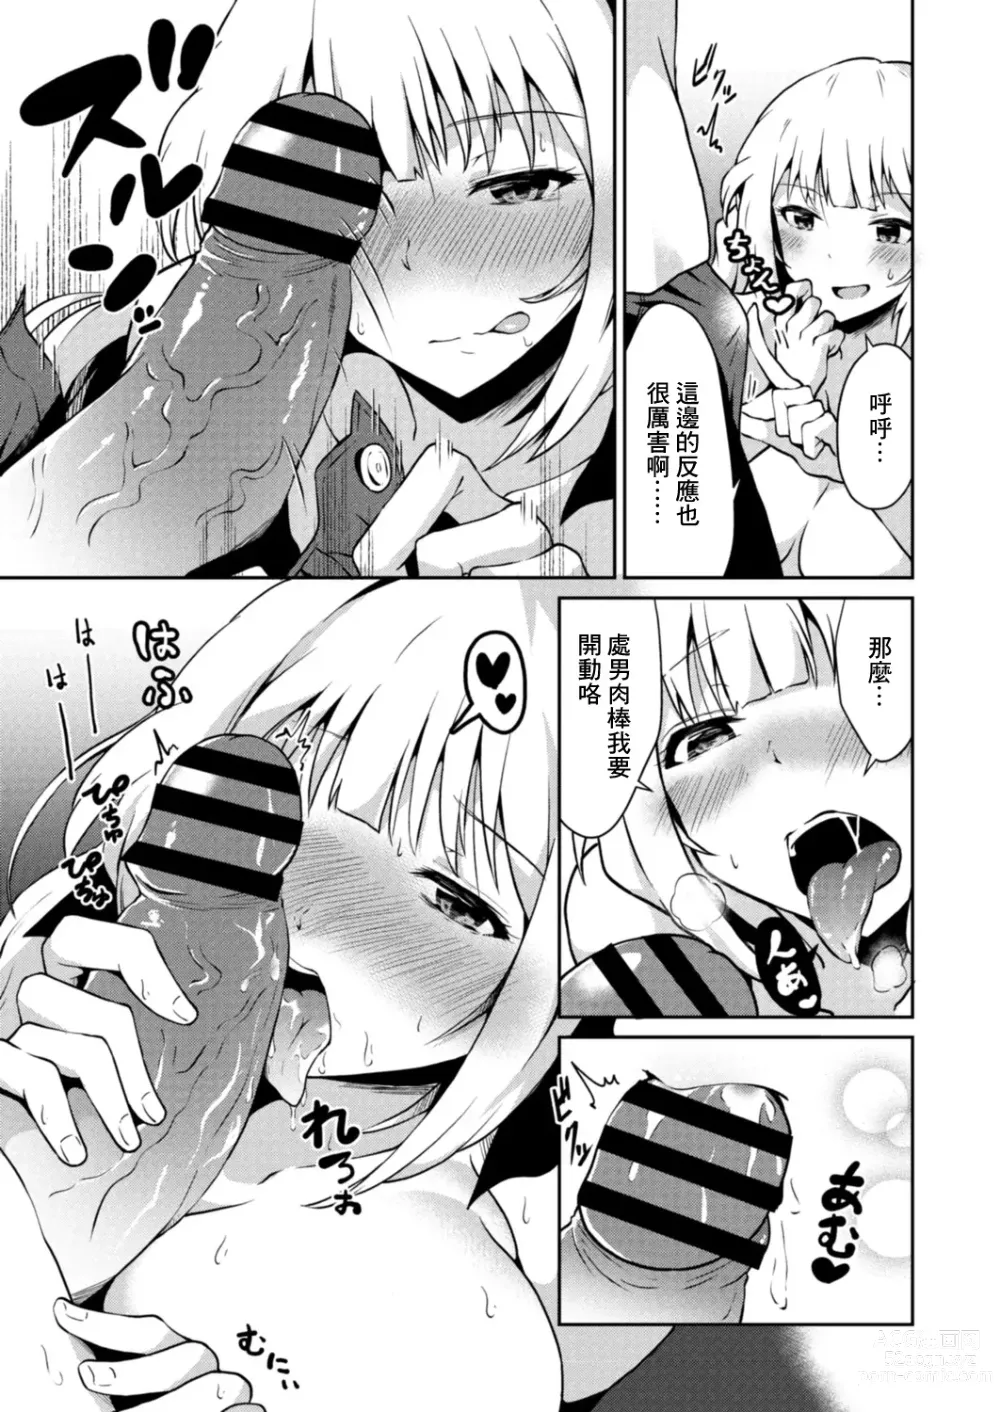 Page 13 of manga Shinjitsu no Katachi